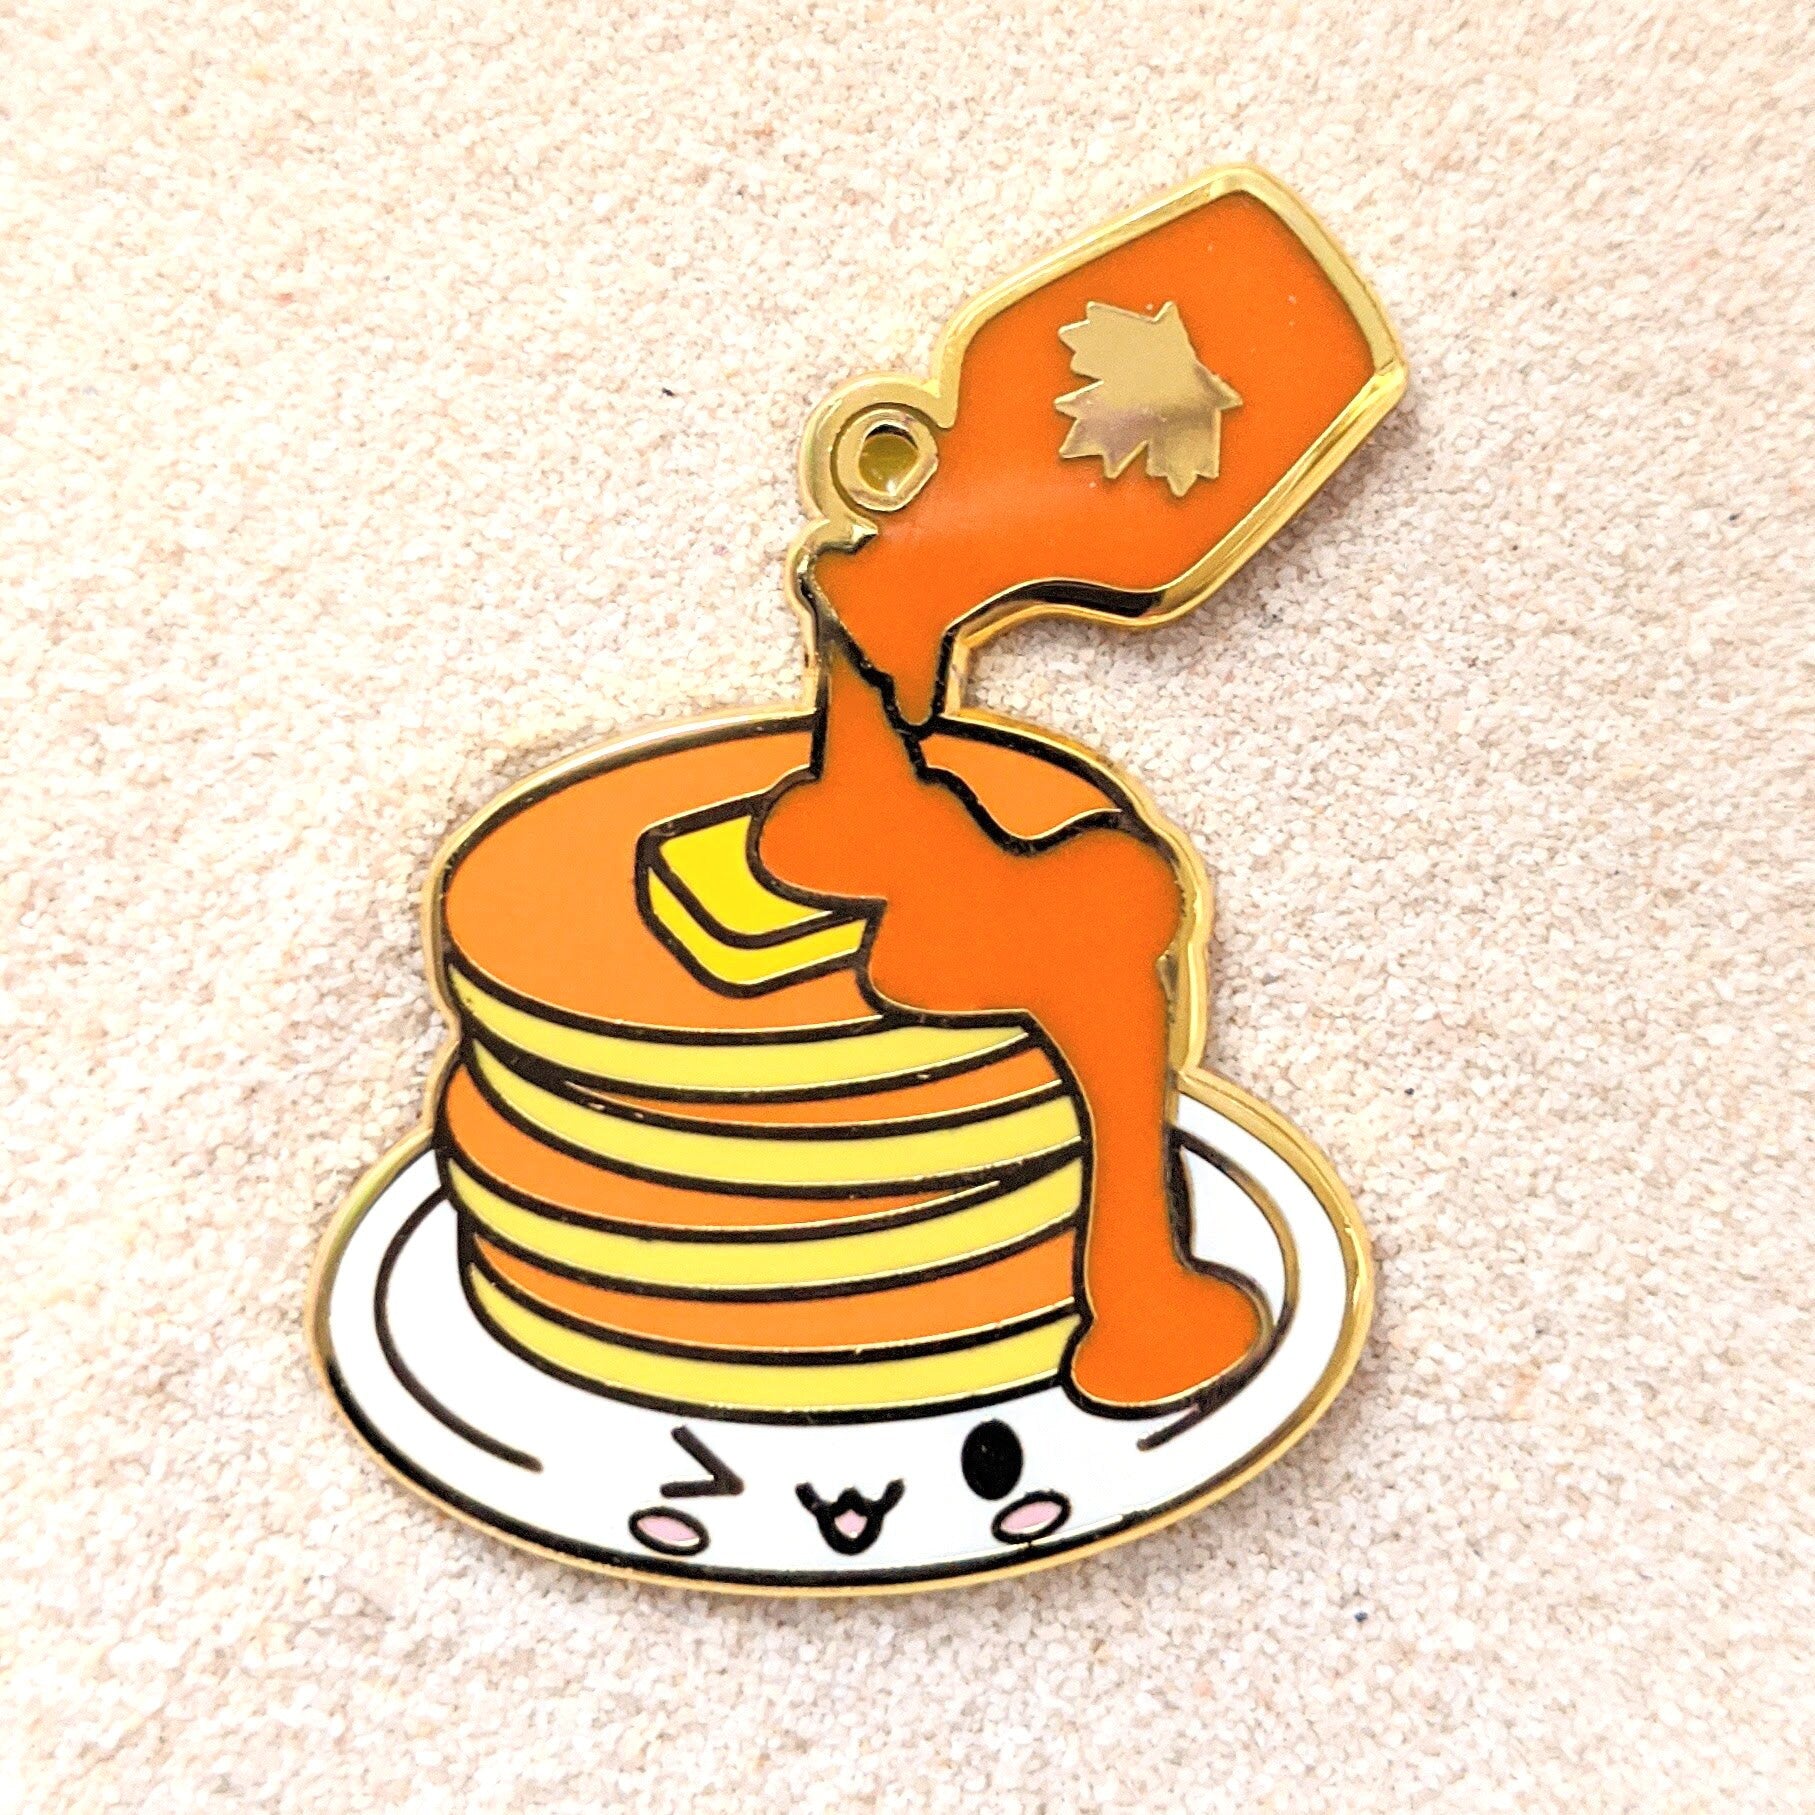 Pancake with Maple Syrup - 1.5" Enamel Pin Lapel Metal Badge